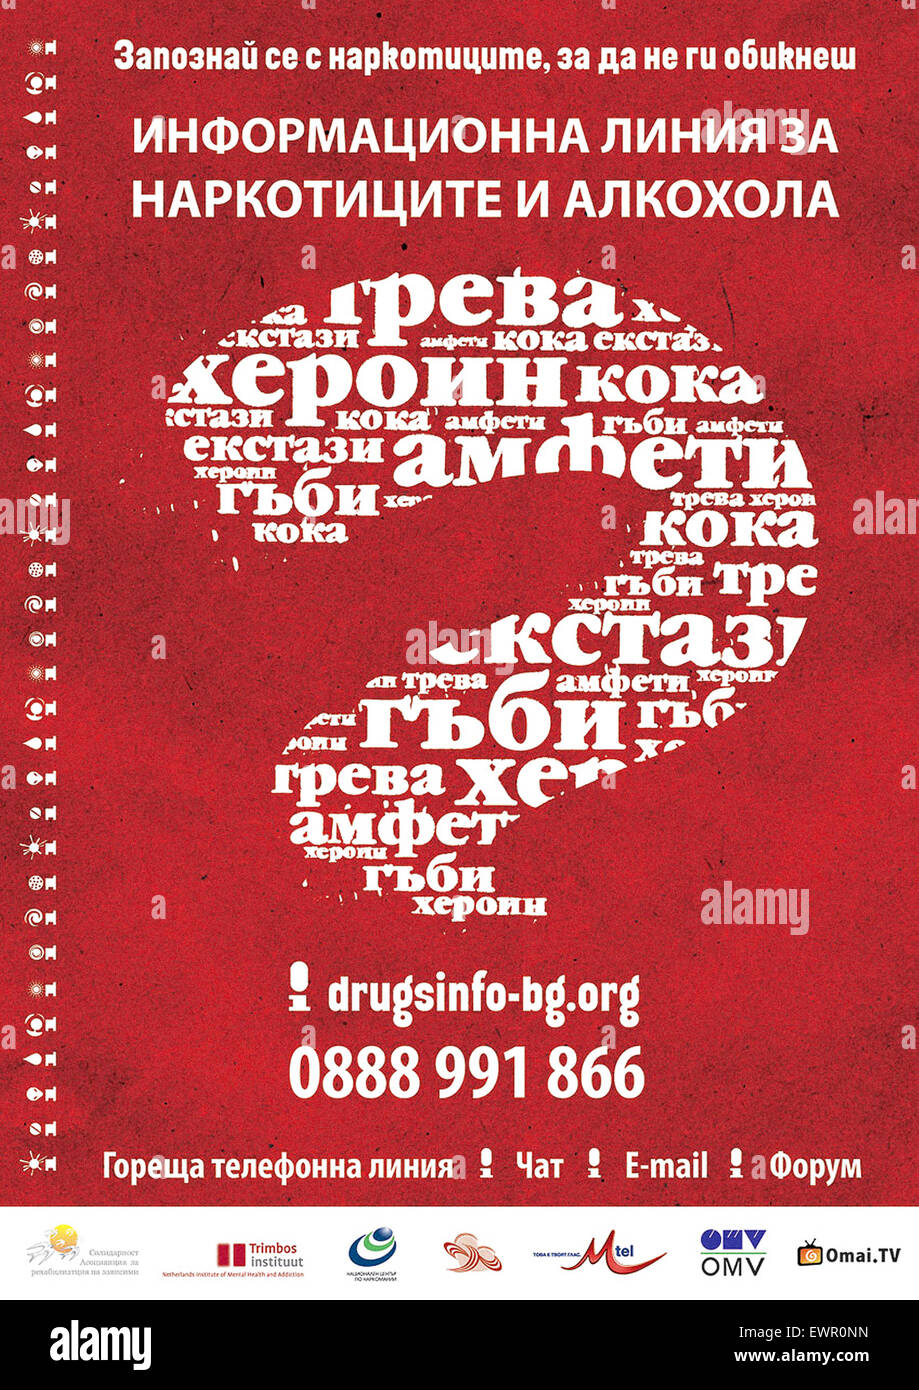 Manifesto della nazionale bulgara per la Droga e Alcool Helpline e sito web rilasciato nel 2009. Vedere la descrizione per maggiori informazioni. Foto Stock